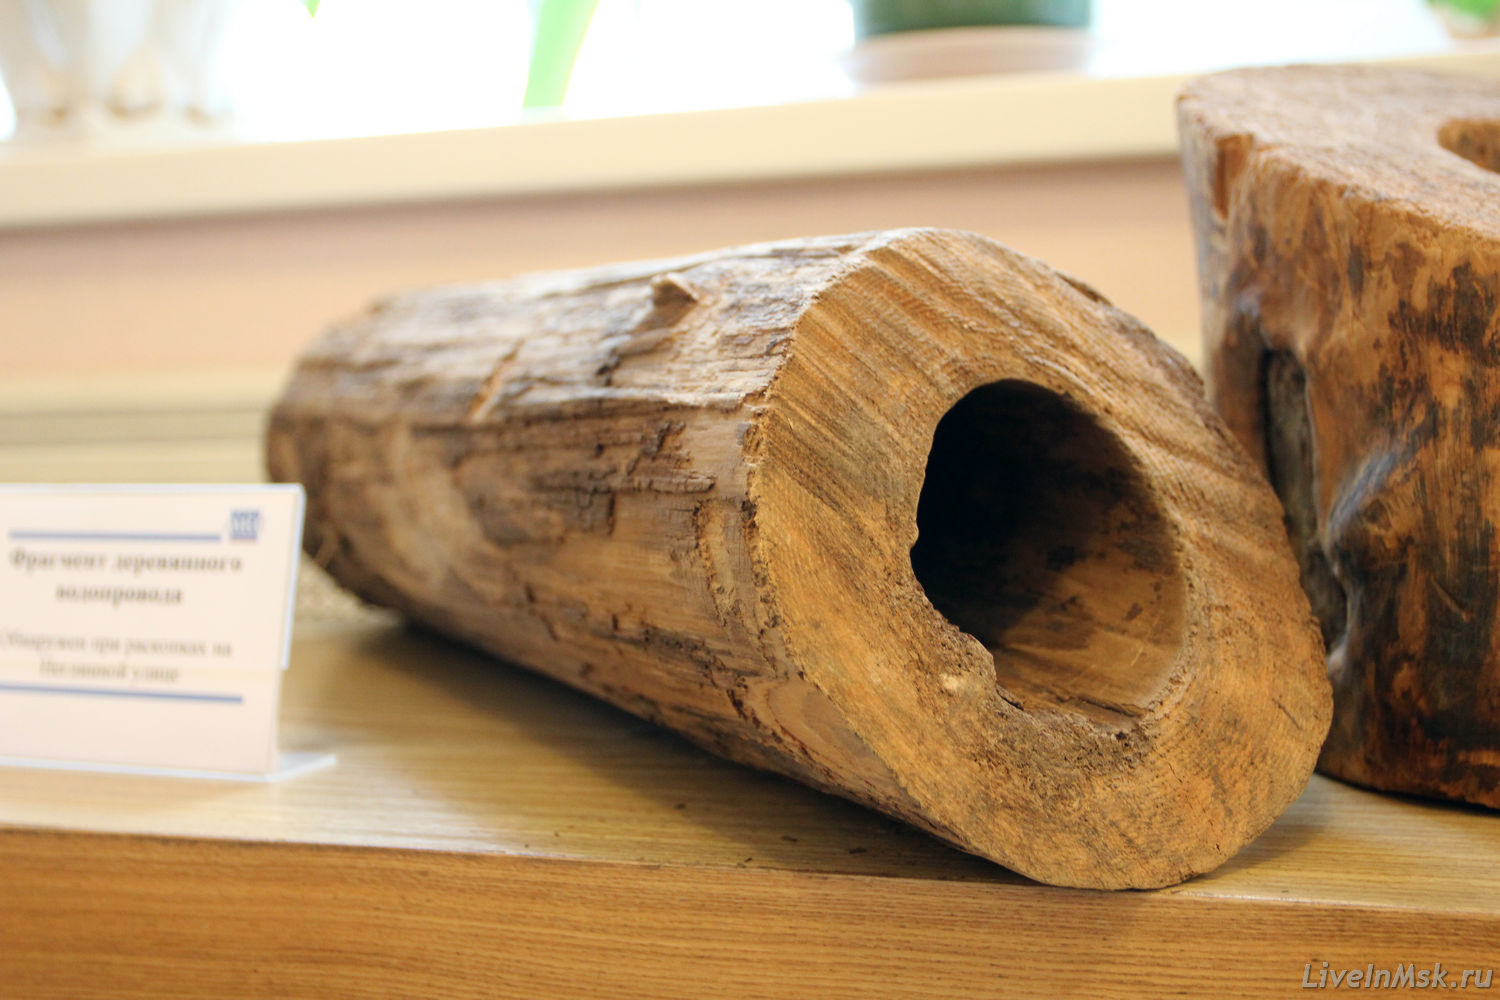 Фрагмент деревянной трубы